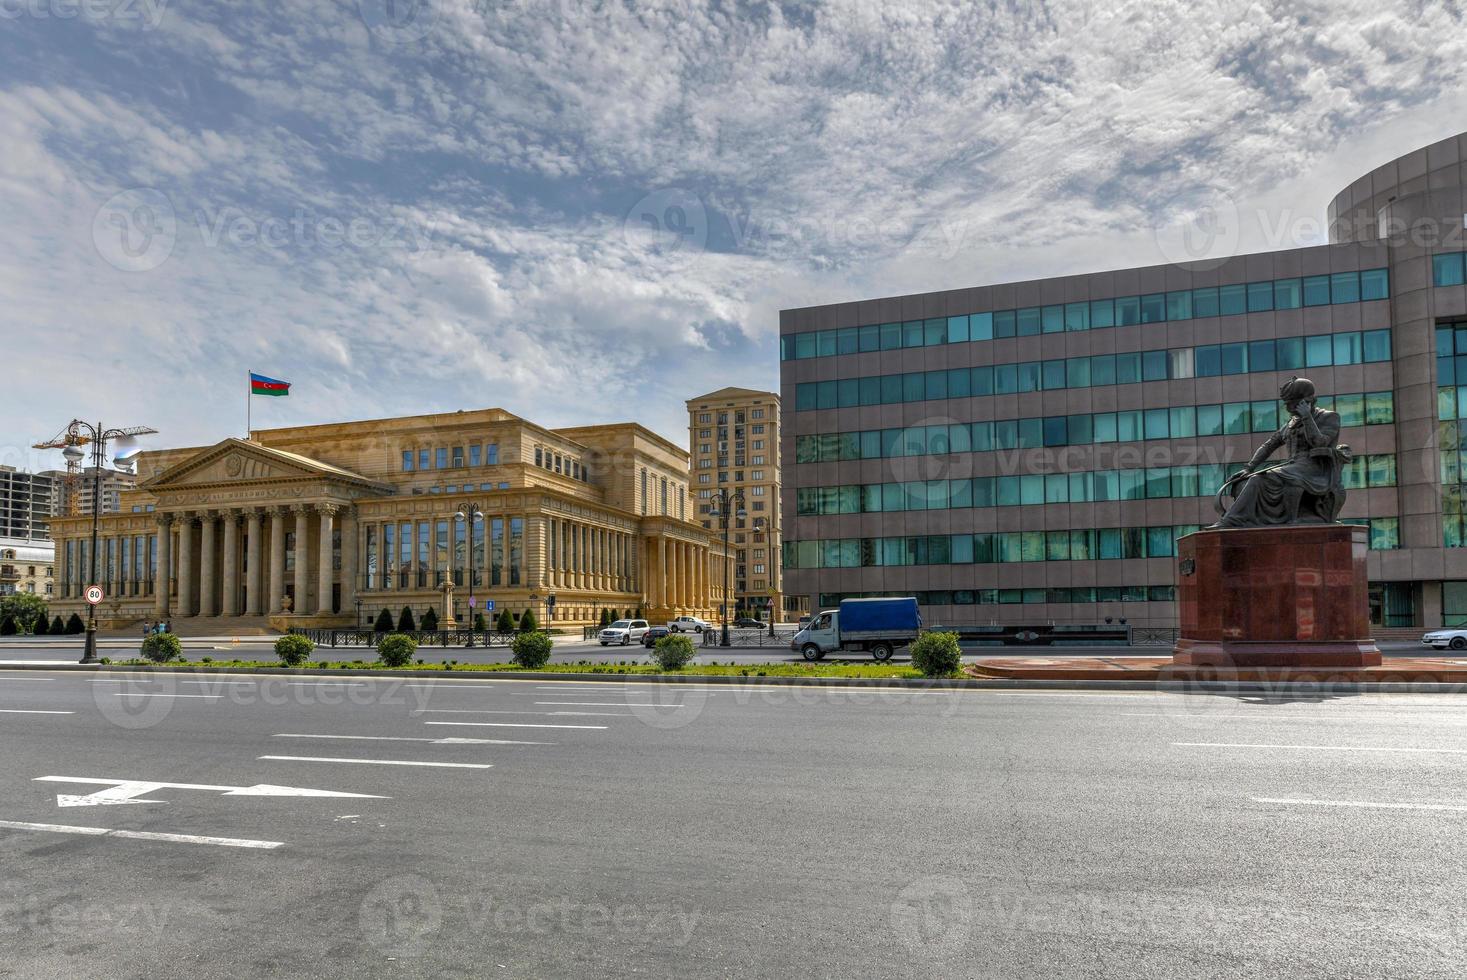 o supremo tribunal da república do azerbaijão em baku, azerbaijão e um monumento ao xá ismail i. foto